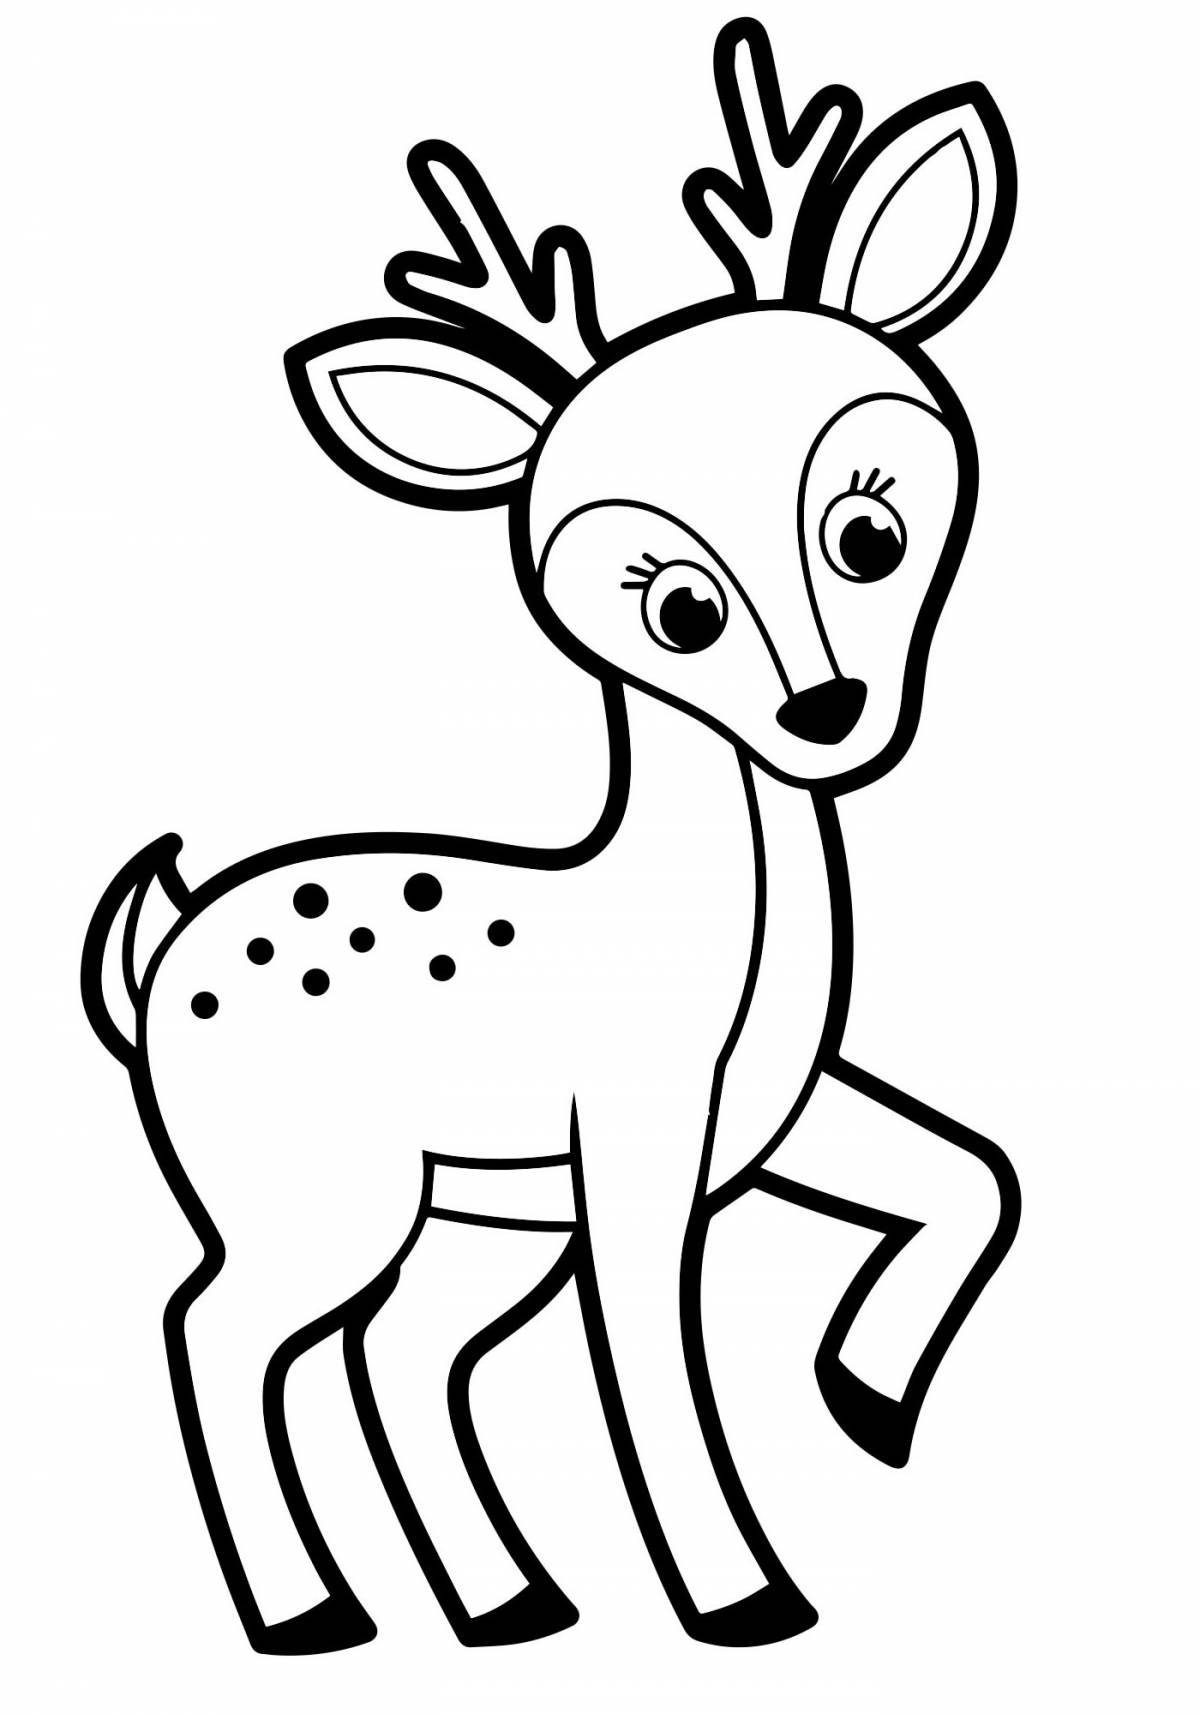 Incredible deer coloring book for kids